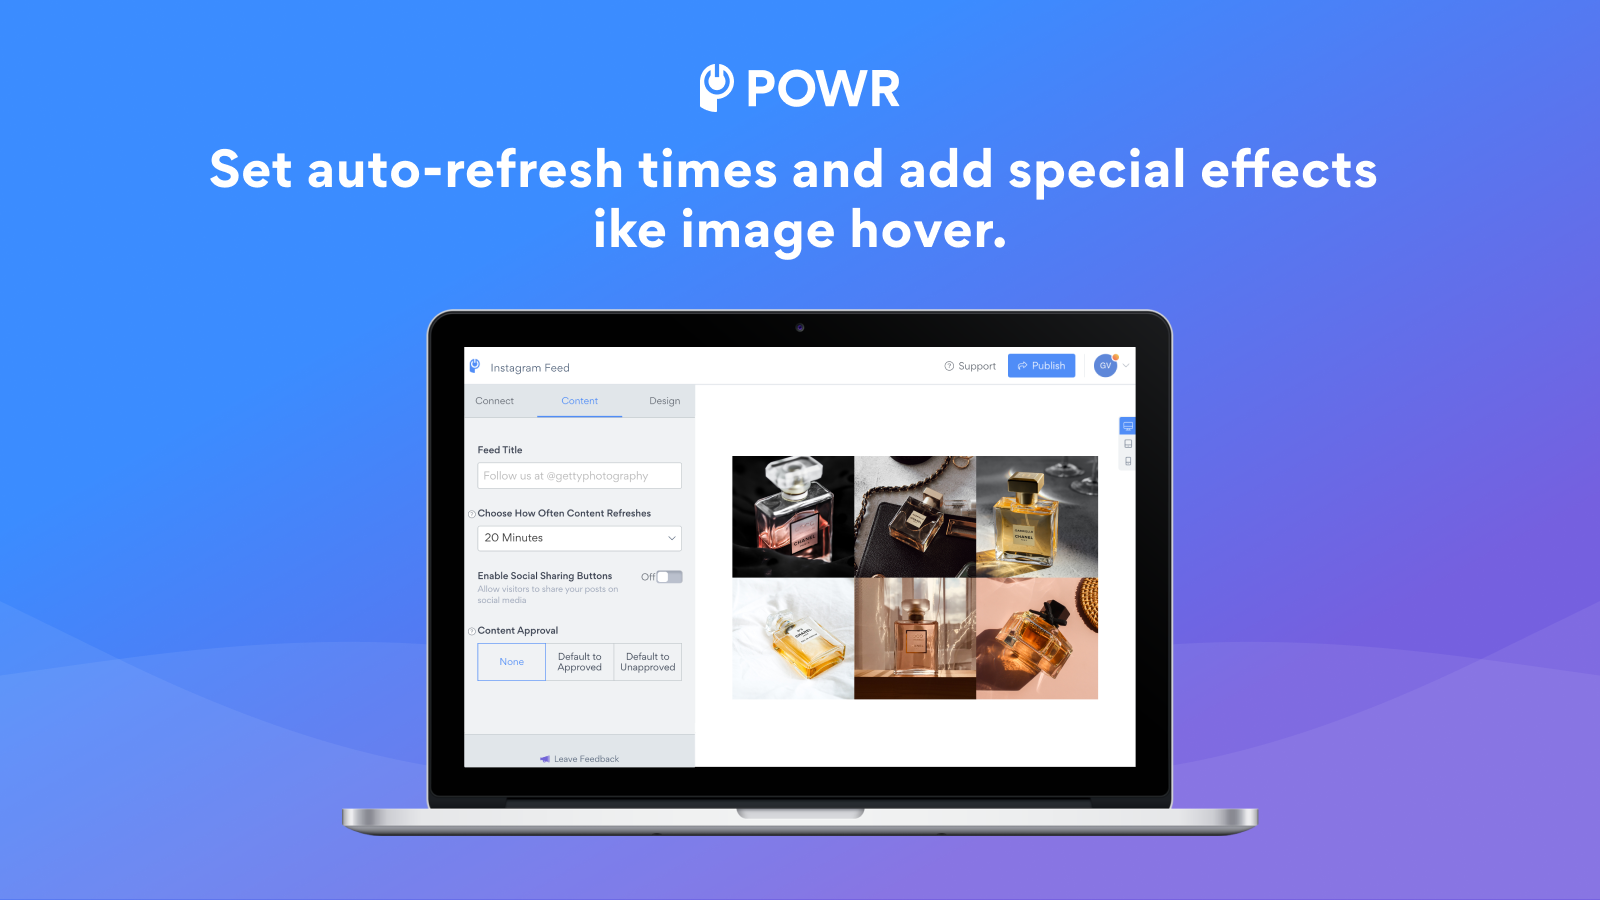 Auto-opdater din Instagram feed og tilføj billedhovereffekter.